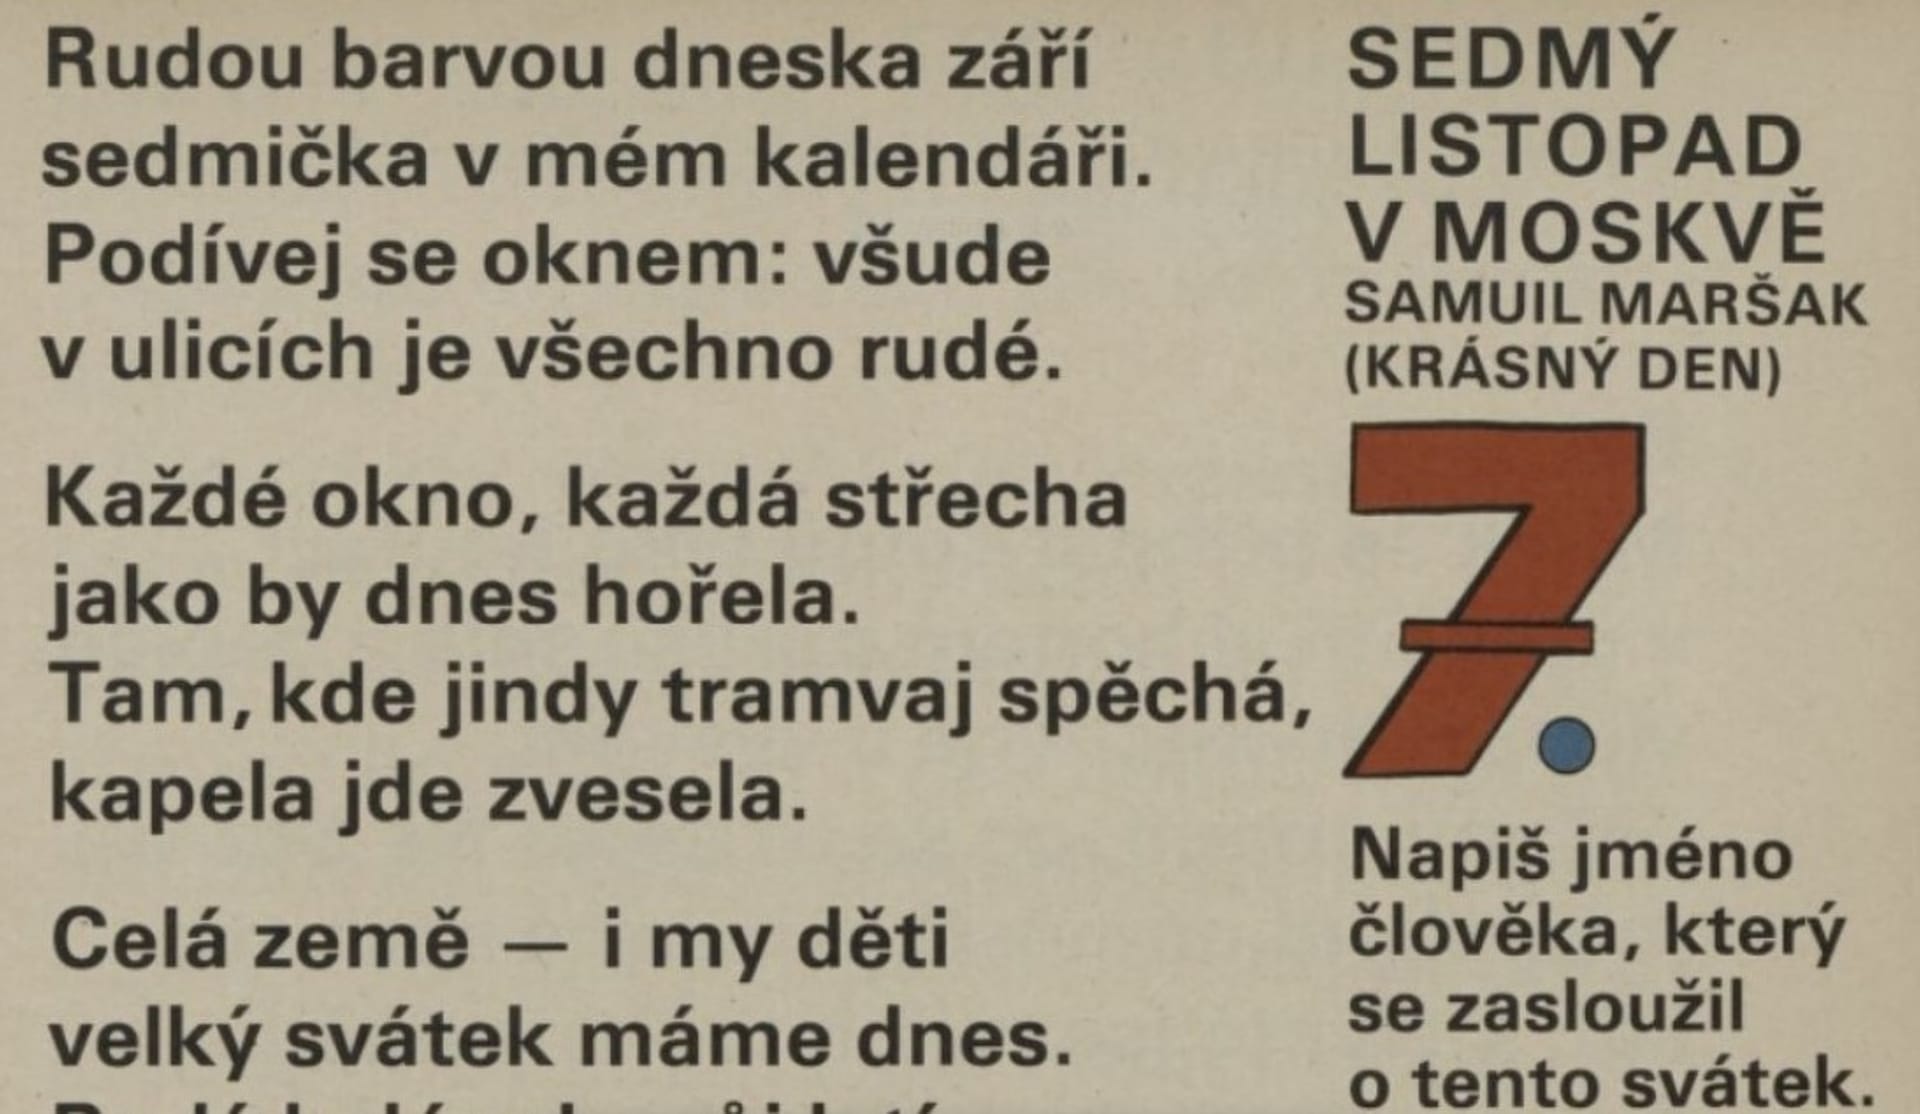 Báseň Sedmý listopad v Moskvě byla poprvé otištěna v časopise Mateřídouška v roce 1950. 